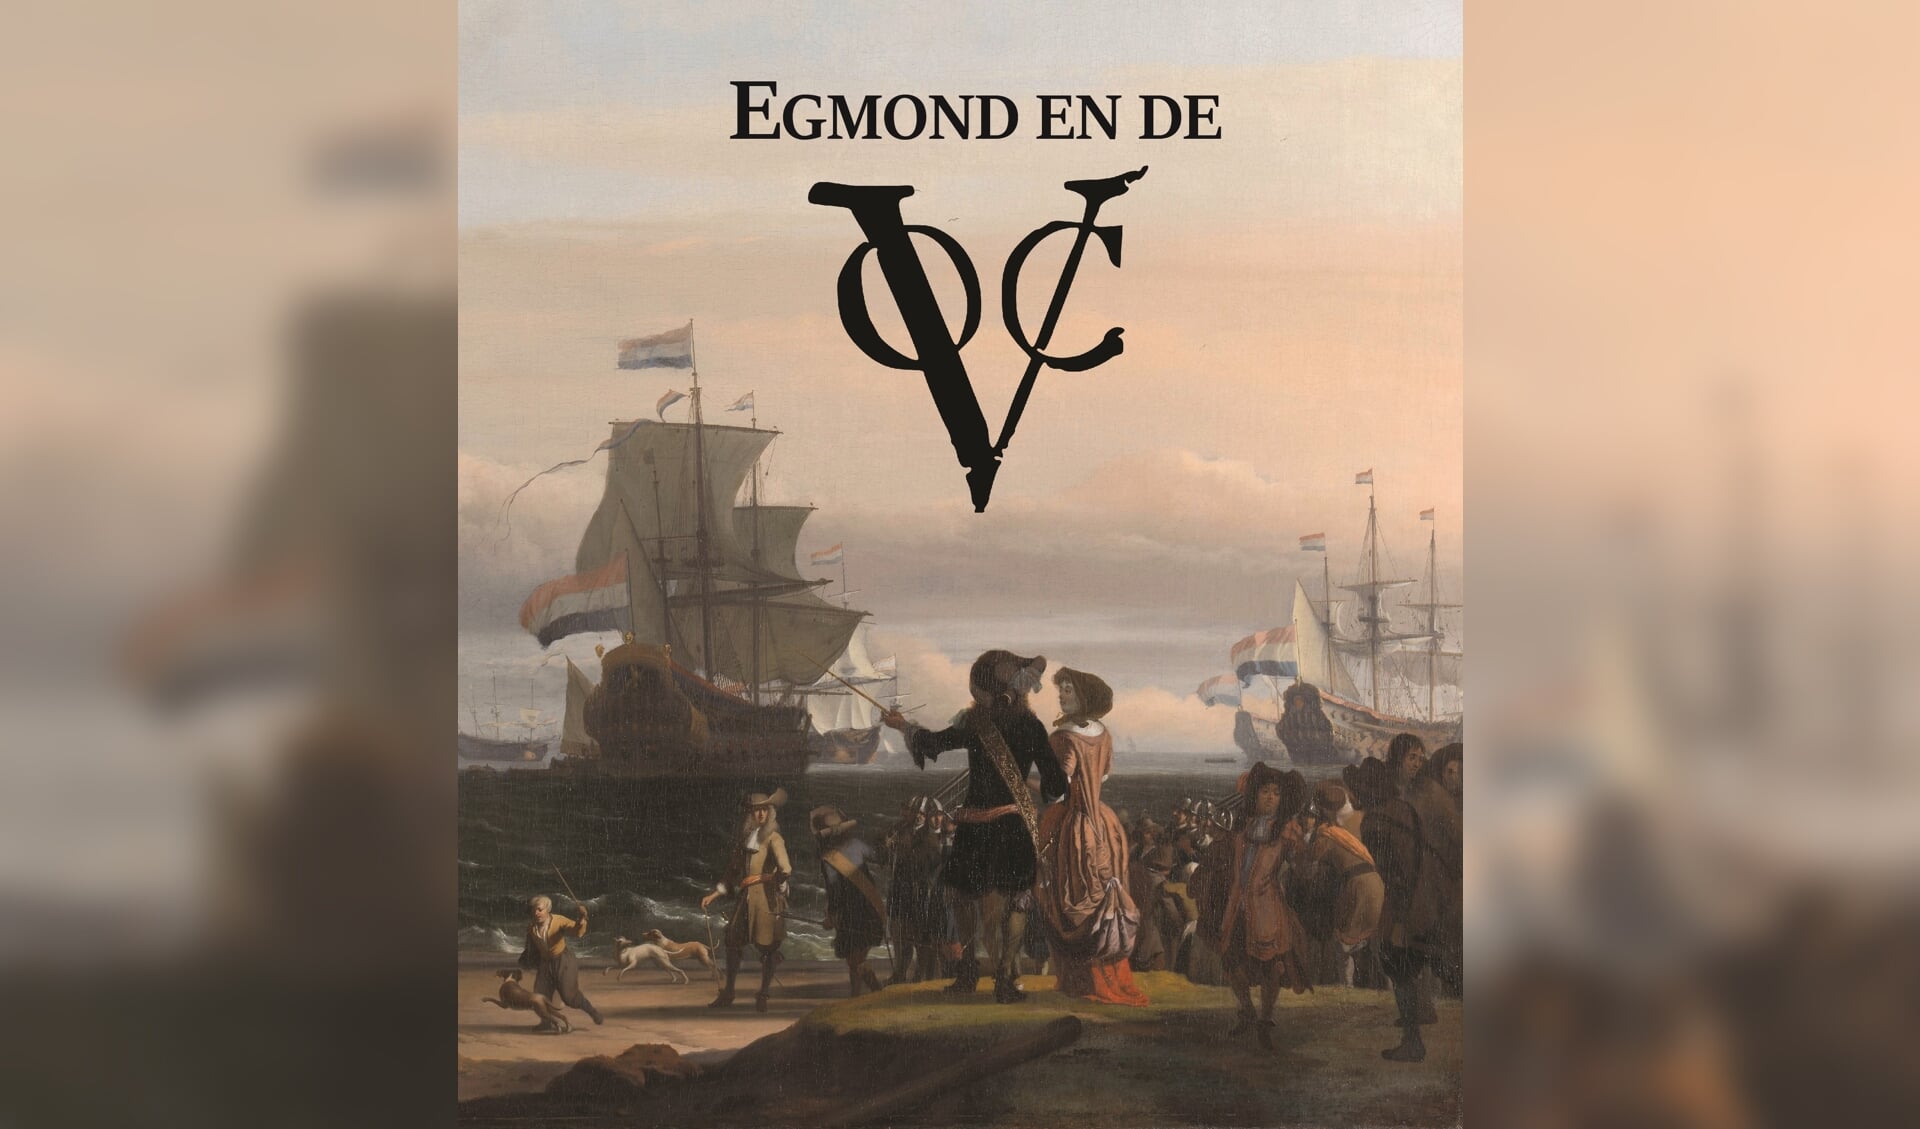 Het gratis boekje ‘Egmond en de VOC’ staat vol indrukwekkende verhalen en prachtige plaatjes